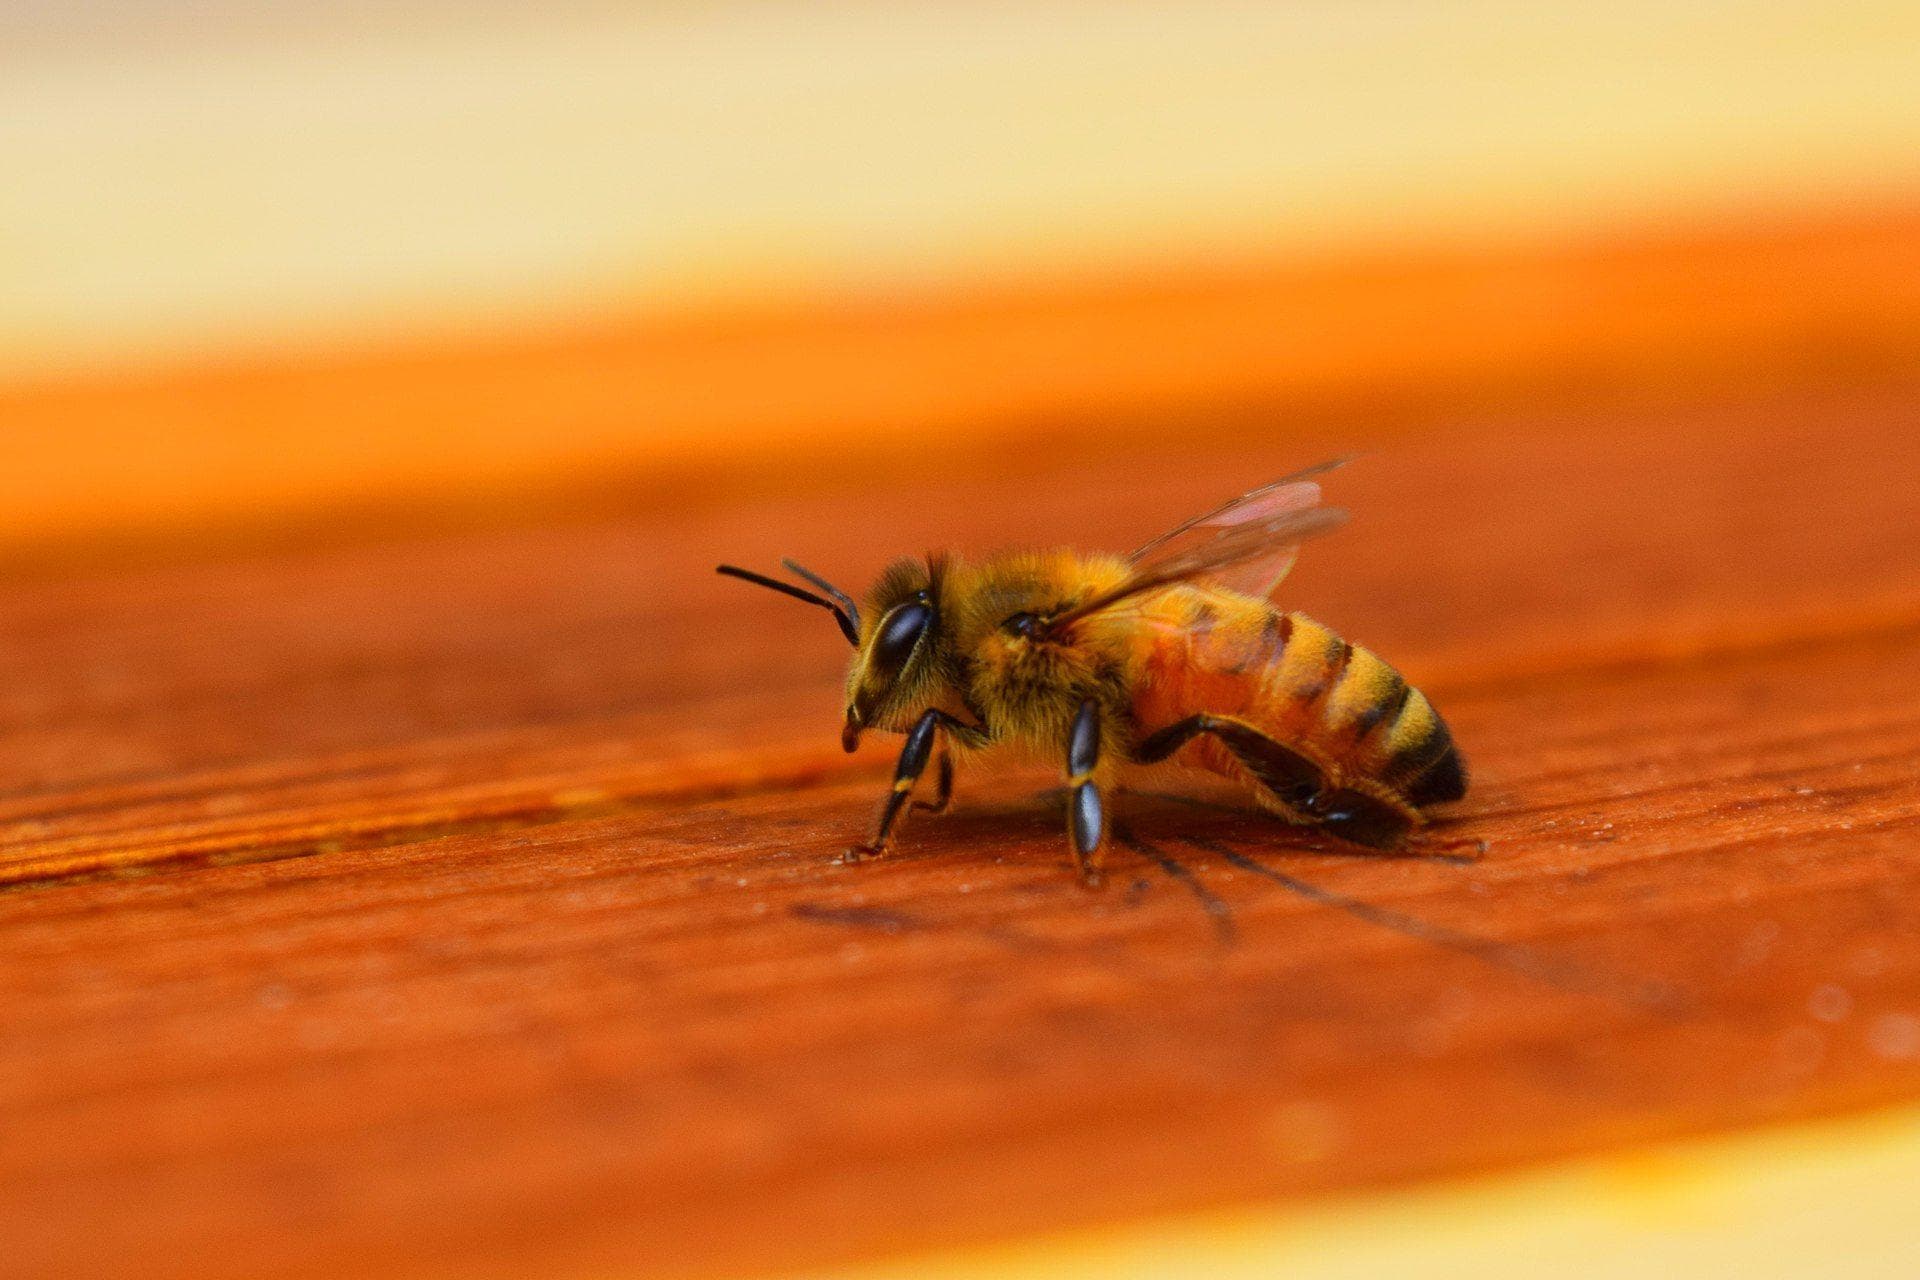 Ong bay vào nhà là điềm gì: Ong làm tổ trong nhà là may hay xui, có nên đuổi đi? an toàn buổi sáng Giấc mơ Giải mã giấc mơ hiệu quả ong bay vào nhà ong bay vào nhà điềm gì ong bay vào nhà may hay xui ong bay vào nhà thì sao ong làm tổ trong nhà phong thủy thời gian